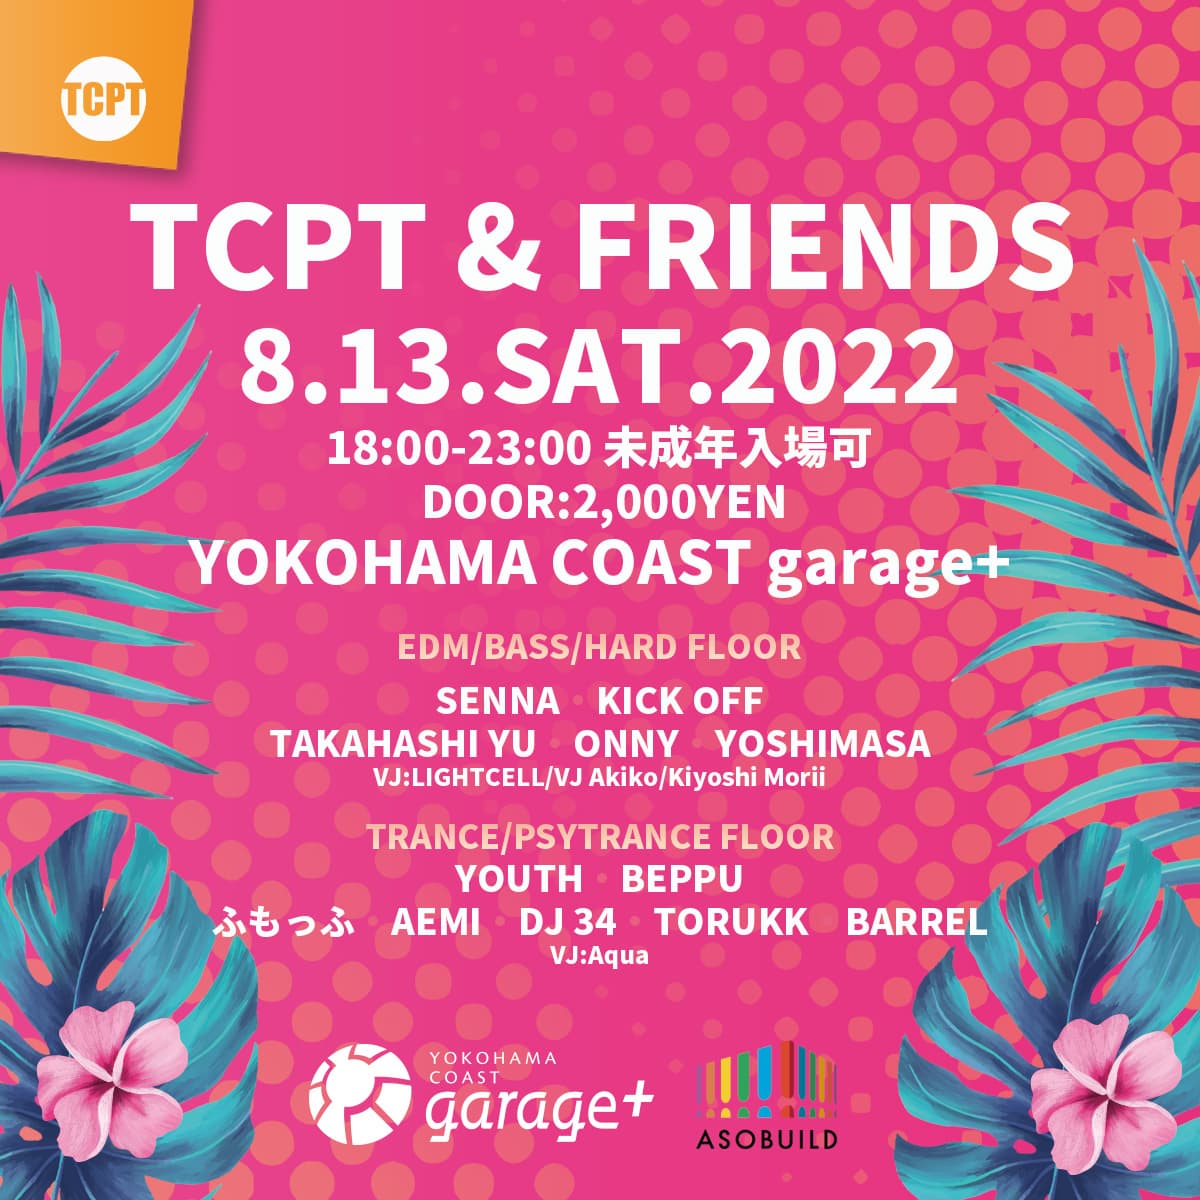 TCPT & FRIENDS @ YOKOHAMA COAST garage+